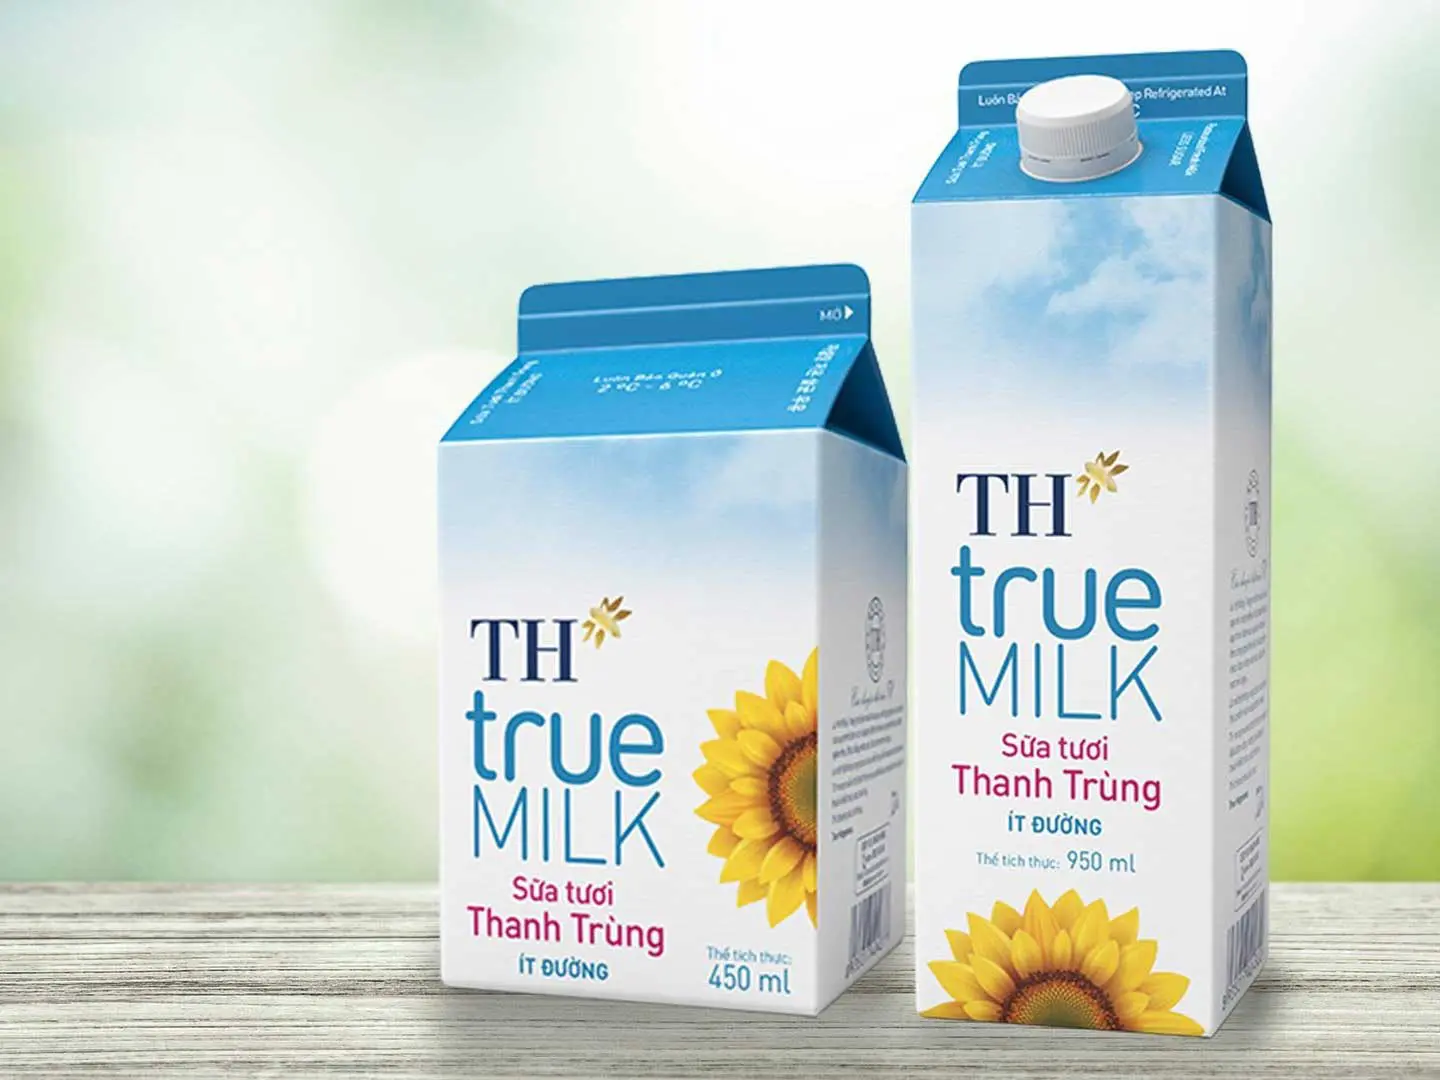 TH true Milk  Nơi làm việc tốt nhất châu Á 2021